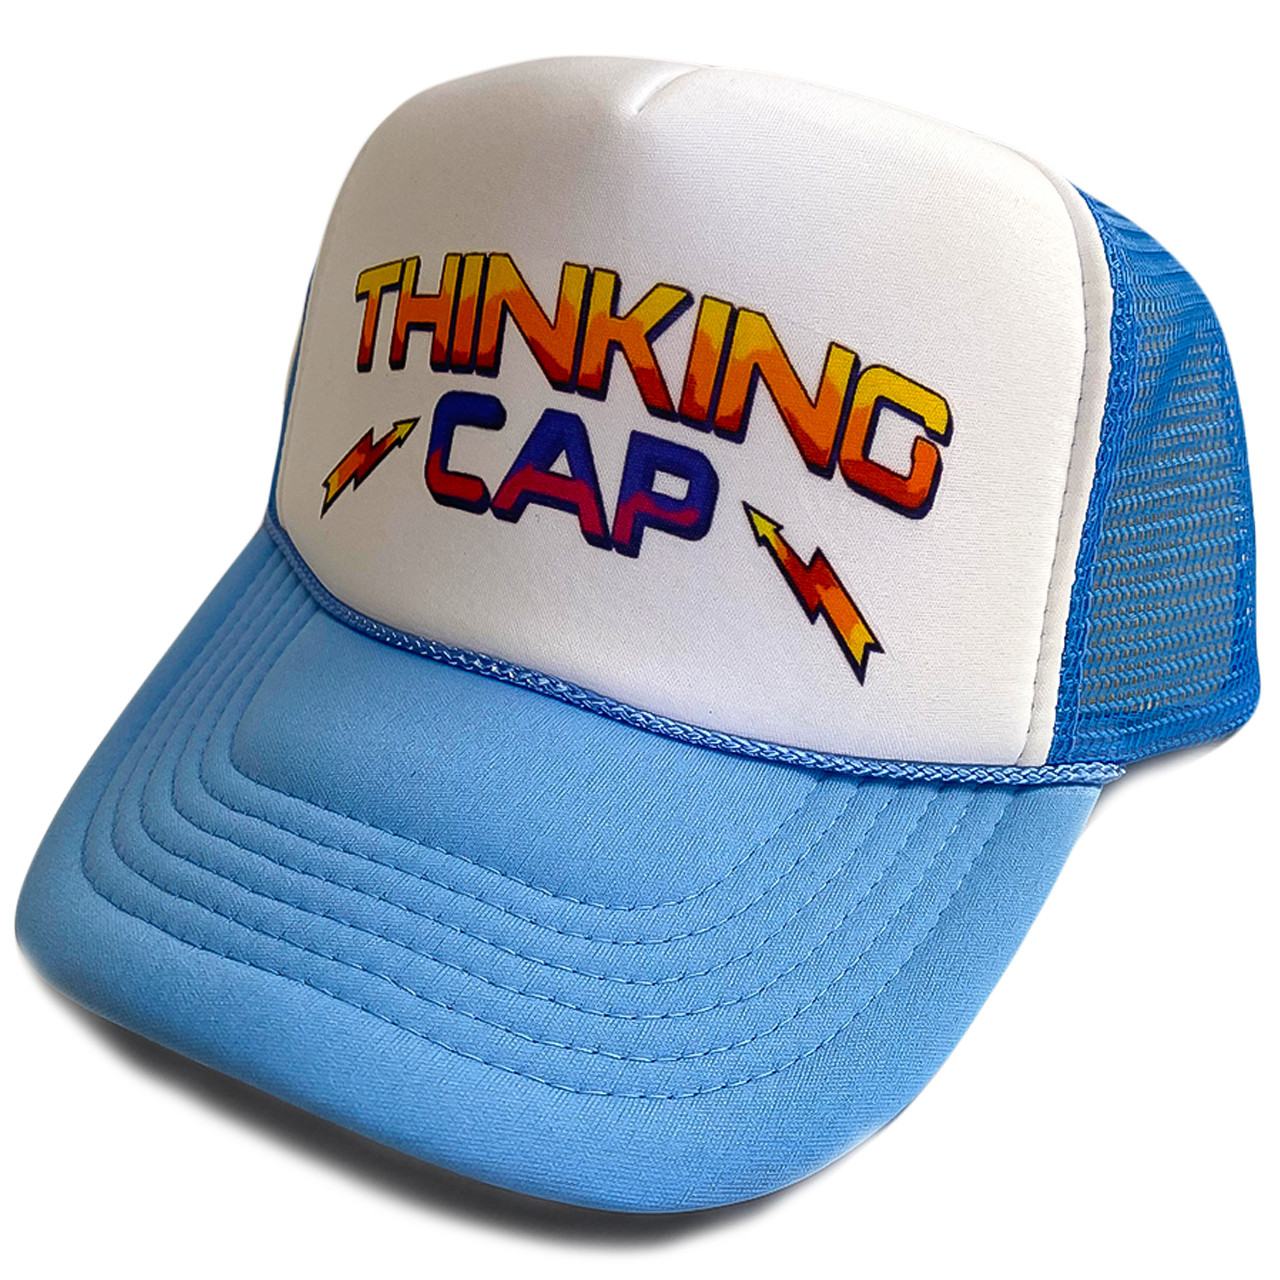 Dustin Stranger Things Hat, Dustin Thinking hat, Stranger Things Cap,  Trucker Hat, TV Hats